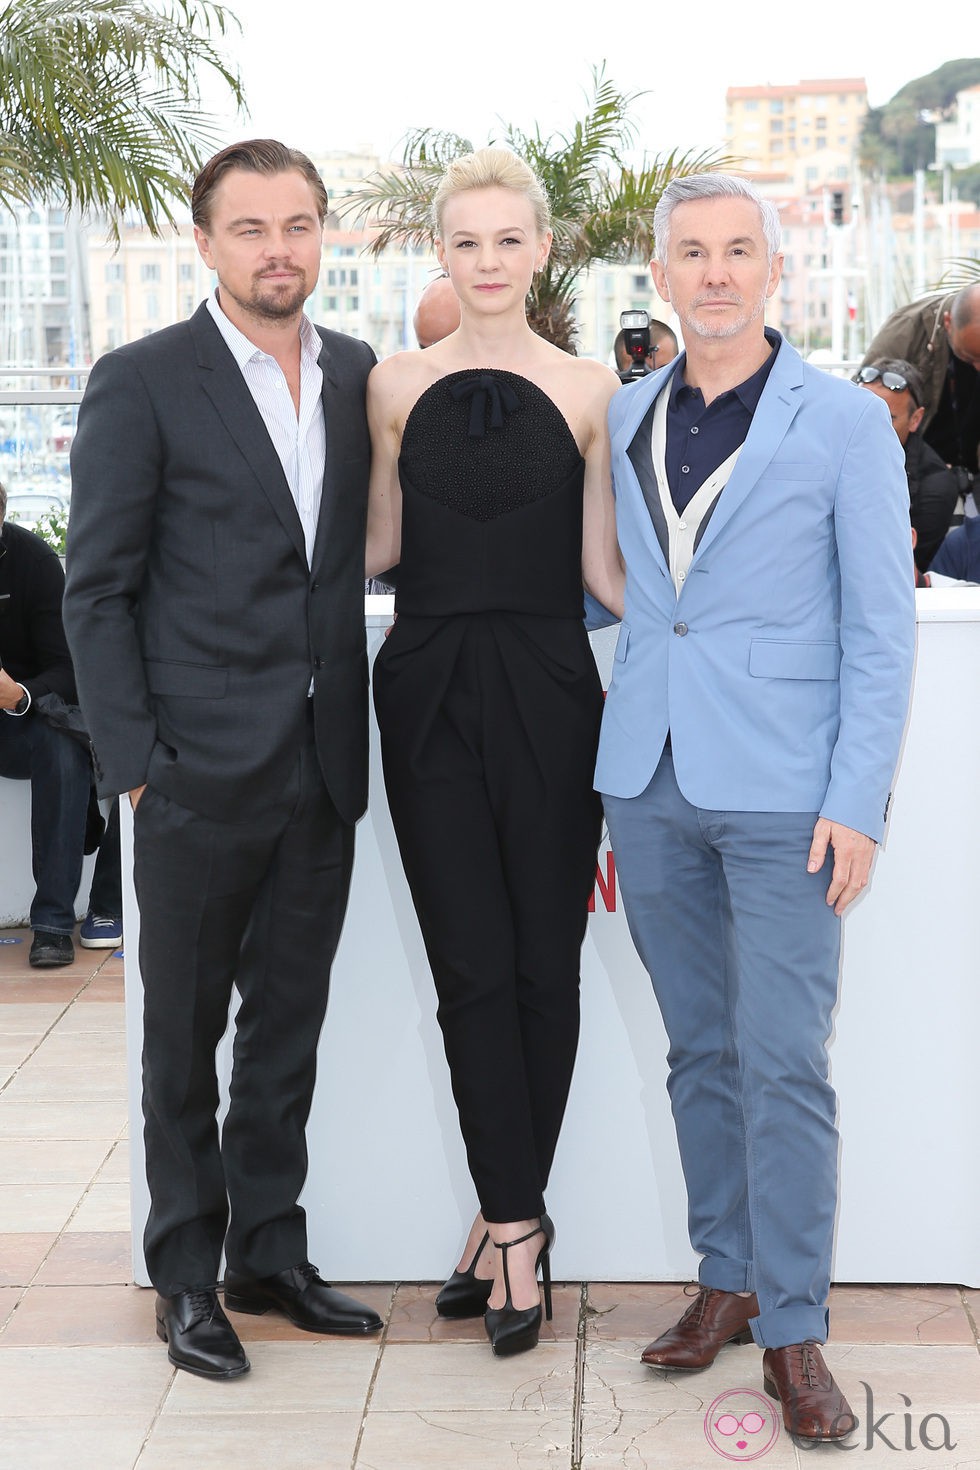 Leonardo DiCaprio, Carey Mulligan y Baz Luhrmann en el Festival de Cine de Cannes 2013